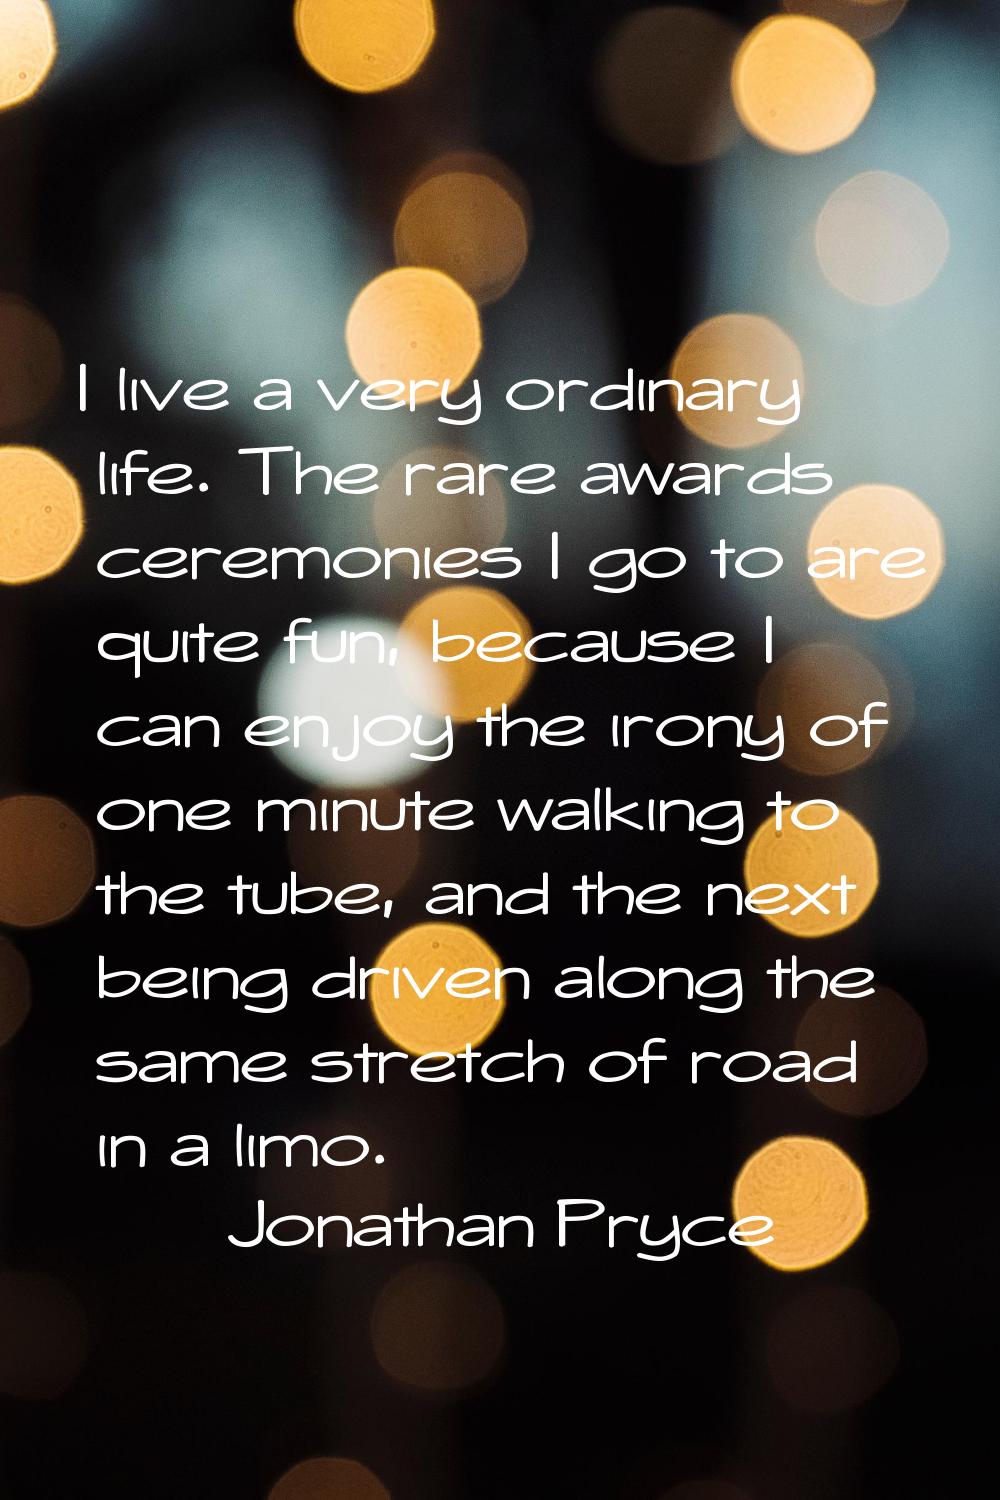 I live a very ordinary life. The rare awards ceremonies I go to are quite fun, because I can enjoy 